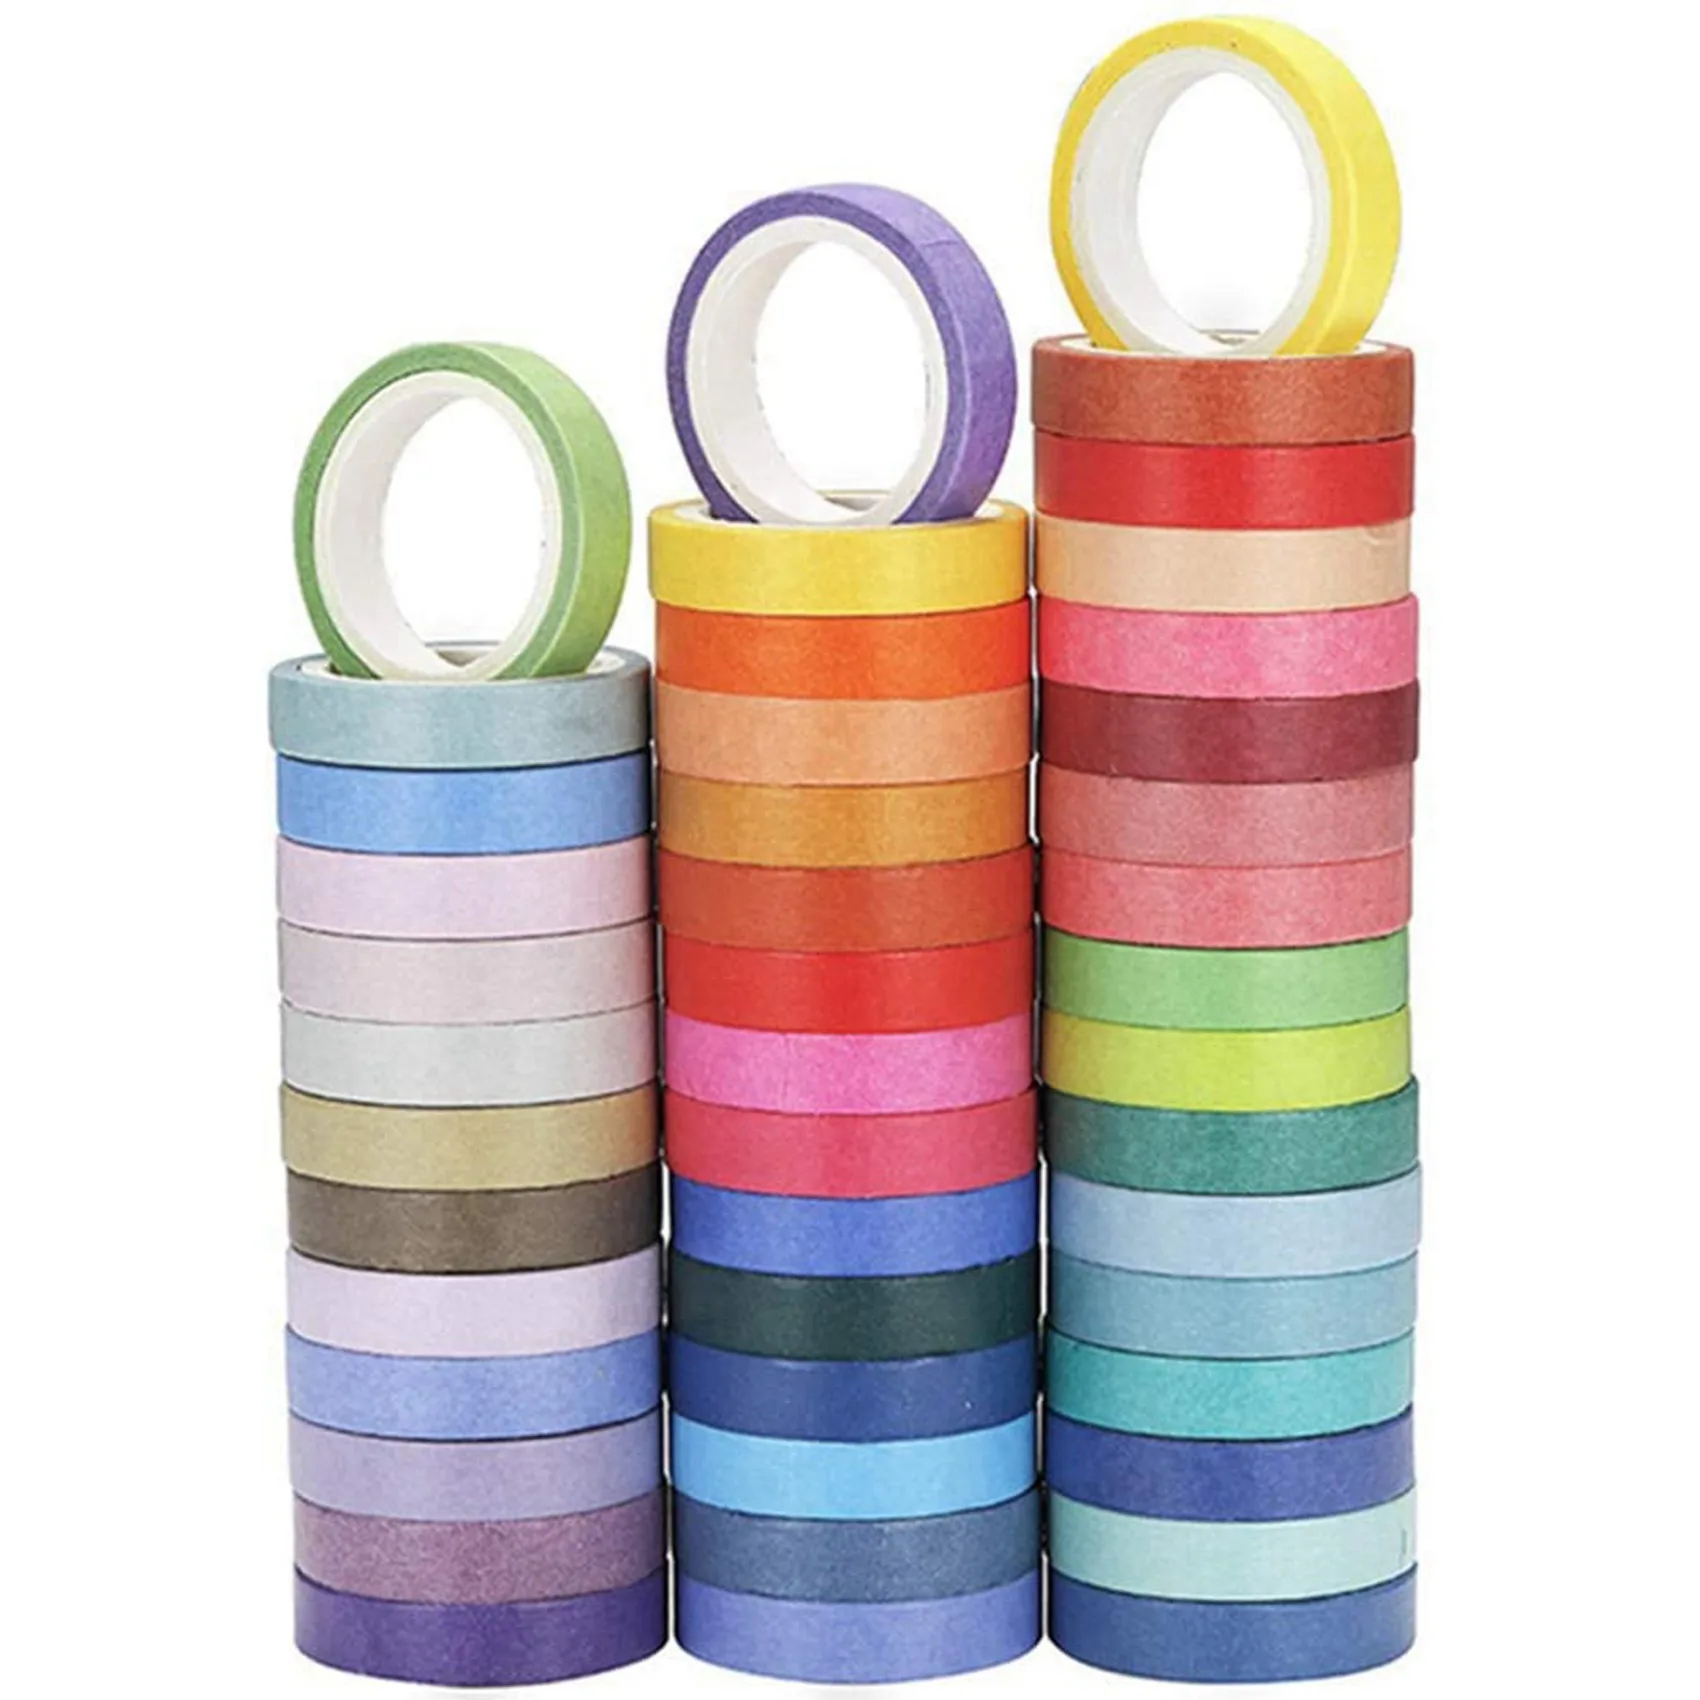 120 pezzi di base tinta unita nastro Washi nastro adesivo arcobaleno nastro adesivo decorativo adesivo diario Scrapbook cancelleria